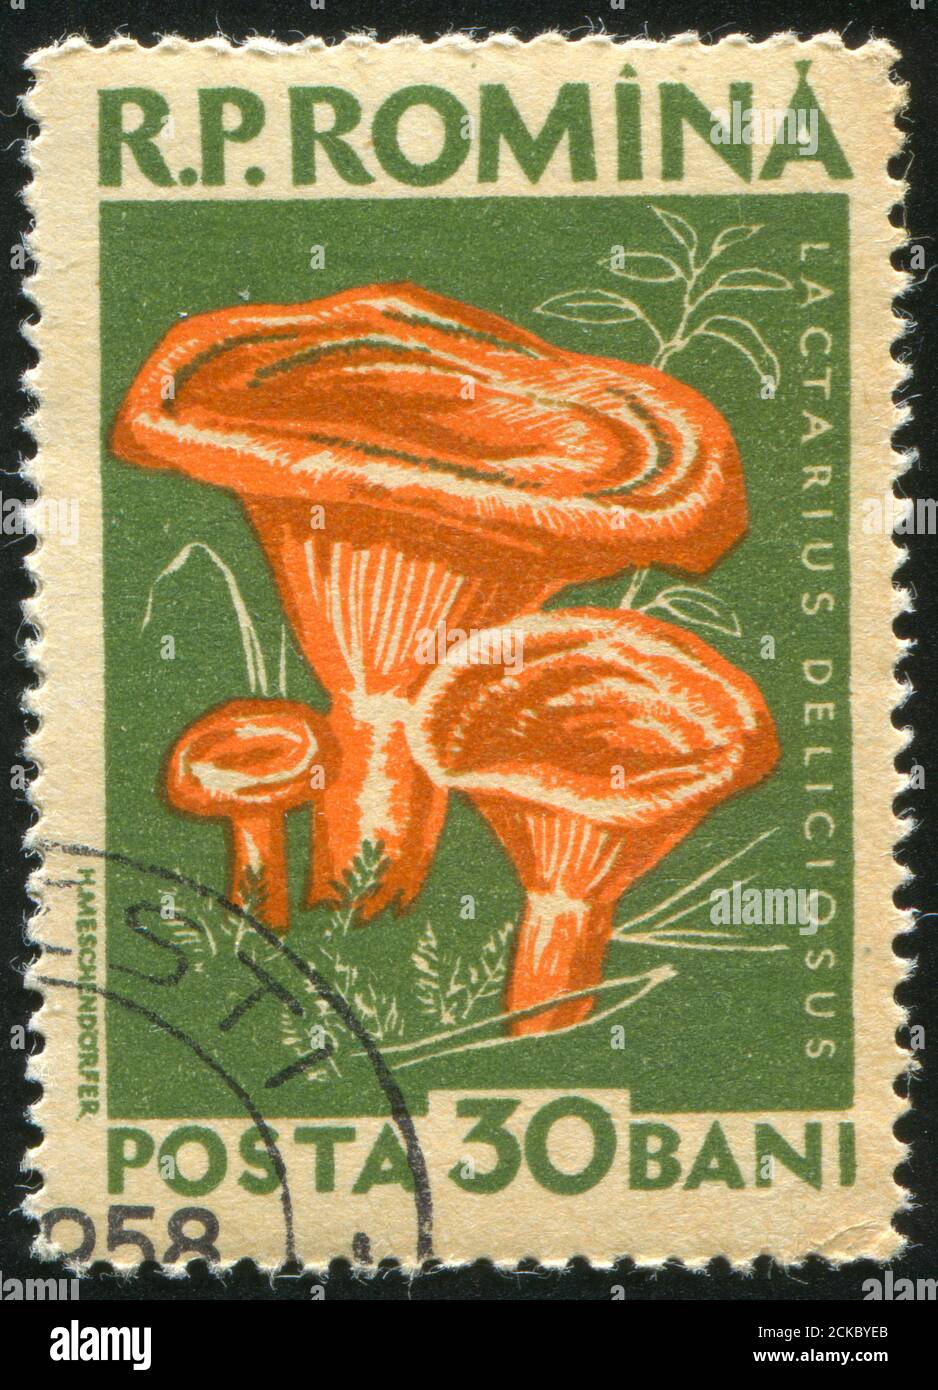 ROMANIA - CIRCA 1957: stamp printed by Romania, show mushroom, circa 1957  Stock Photo - Alamy